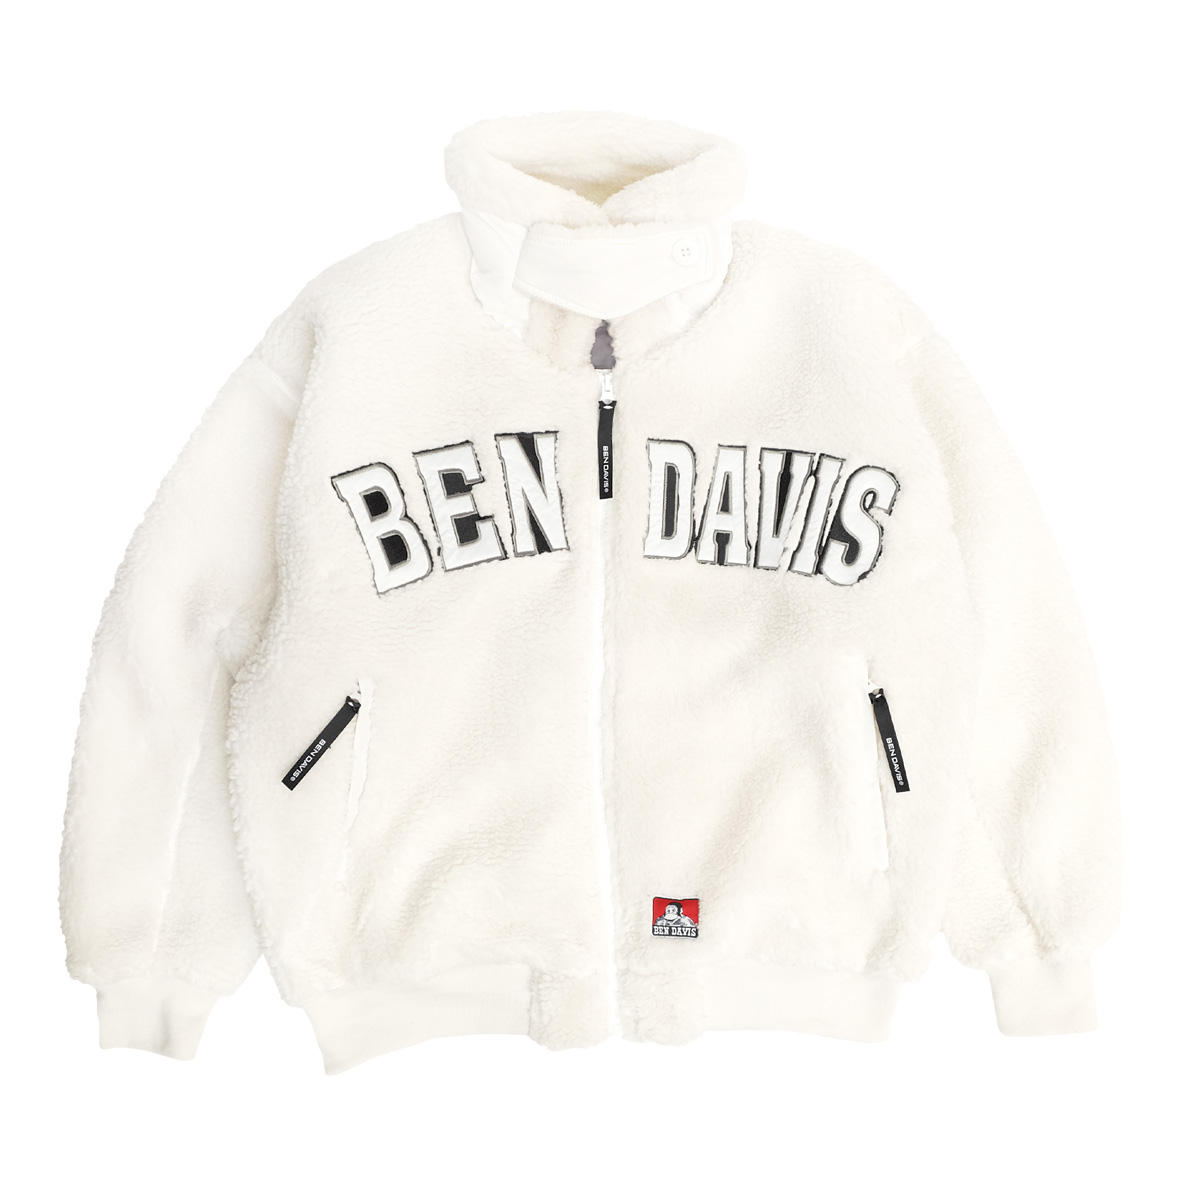 BEN DAVIS ボアジャケット ベンデイビス 2022AW スタンドカラー カレッジロゴ ワッペン 刺繍 シープボア ジャケット BEN-1951